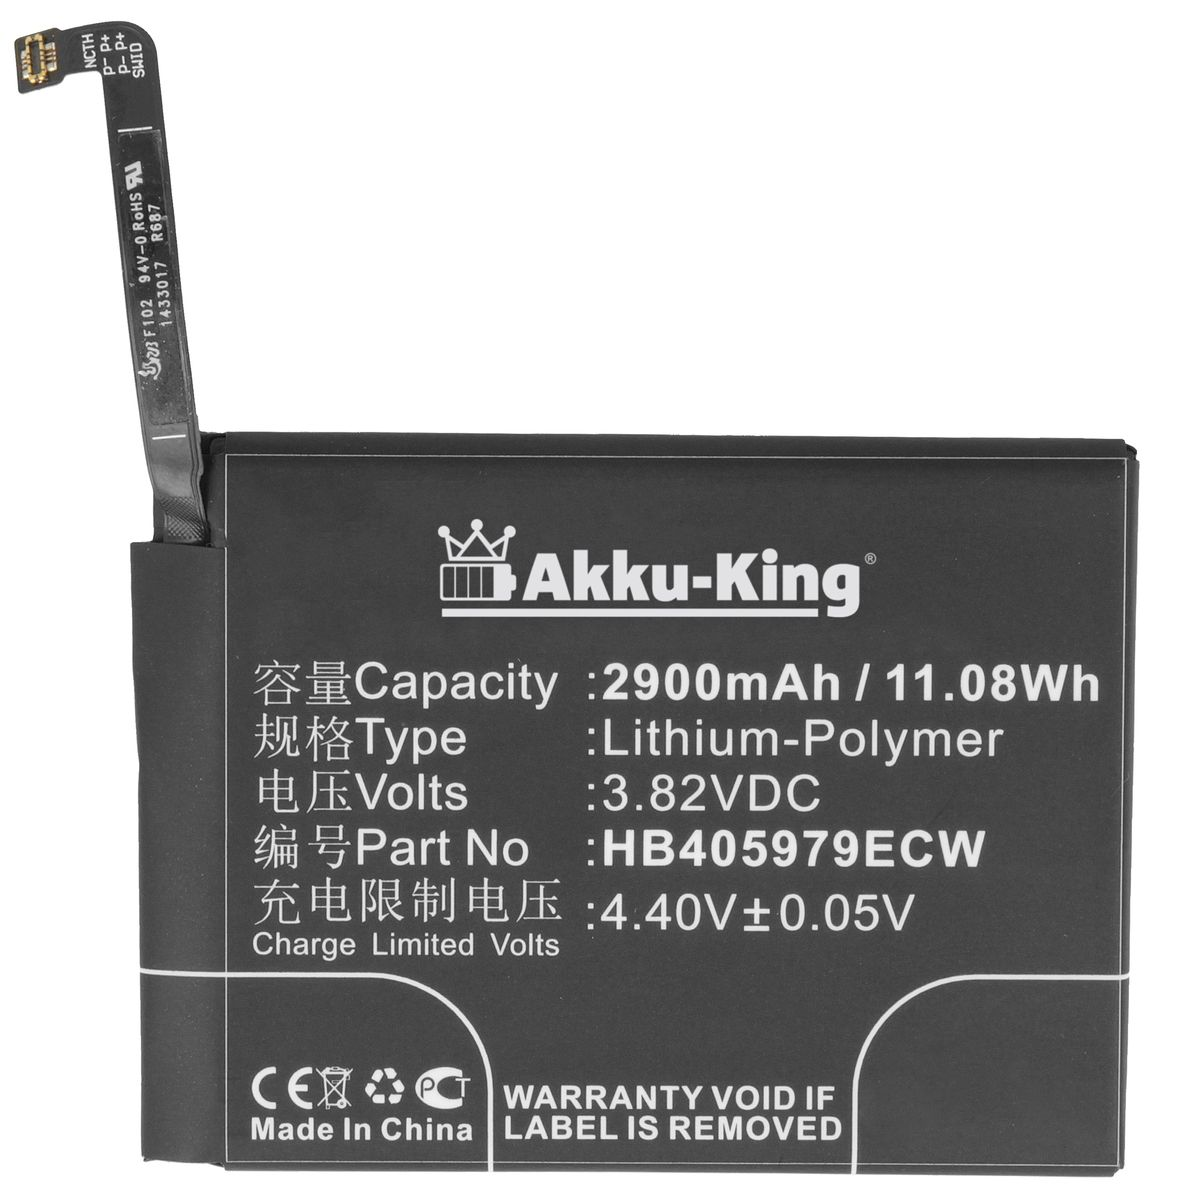 Volt, 2900mAh HB405979ECW Akku Li-Polymer mit AKKU-KING Huawei Handy-Akku, kompatibel 3.8